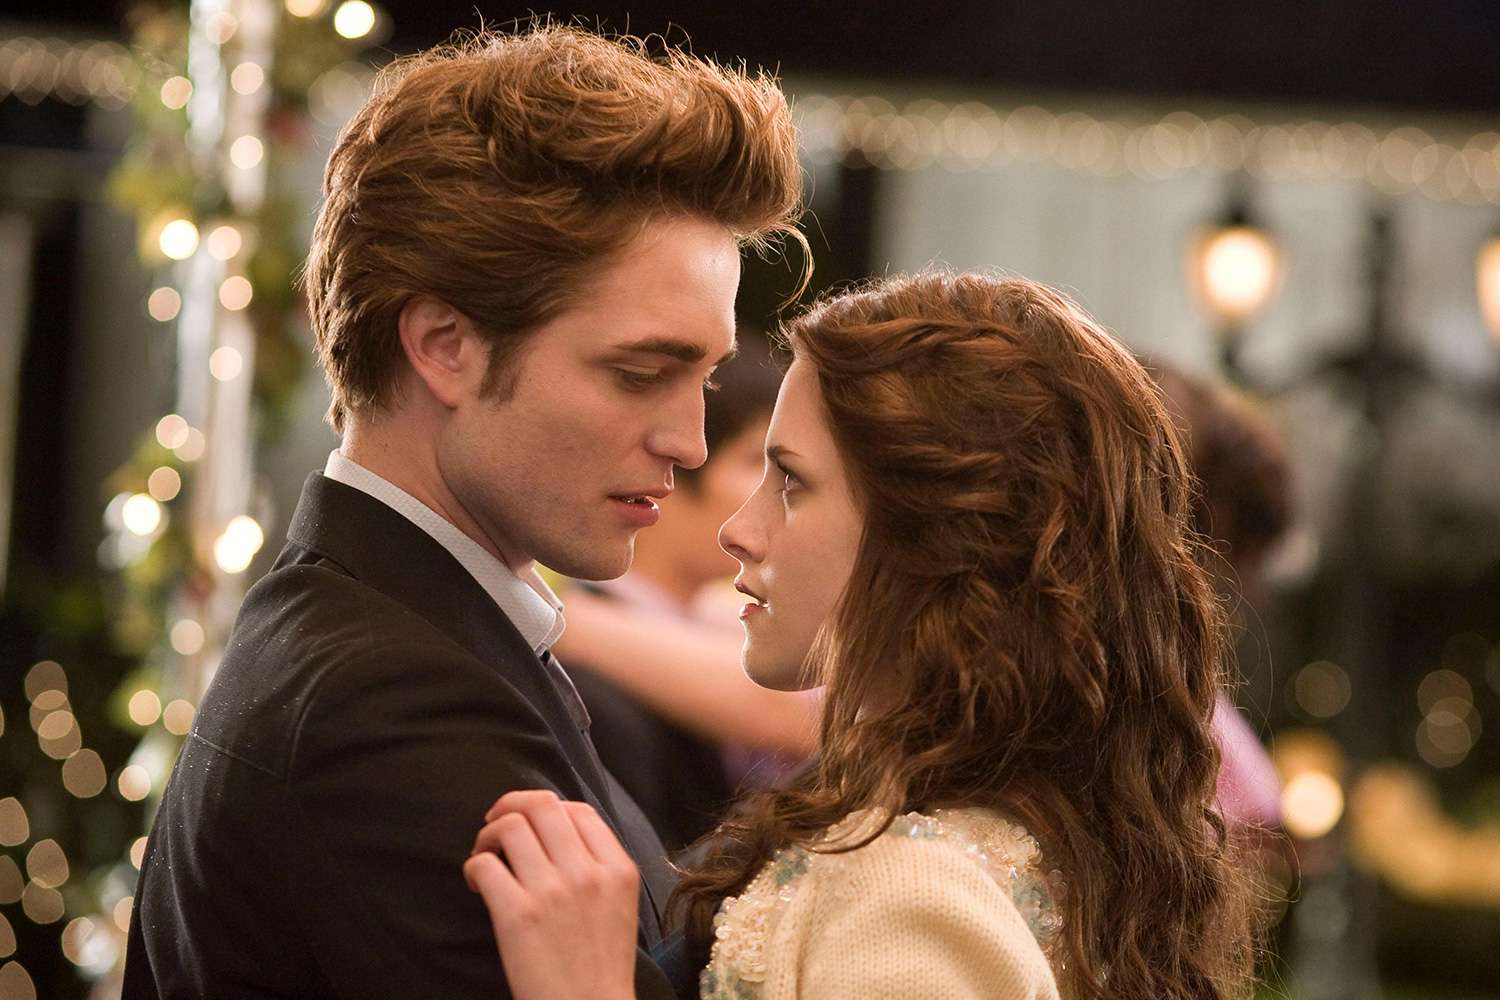 Kristen Stewart on 10 Years Since Last Twilight: 'It's Weird' | PEOPLE.com